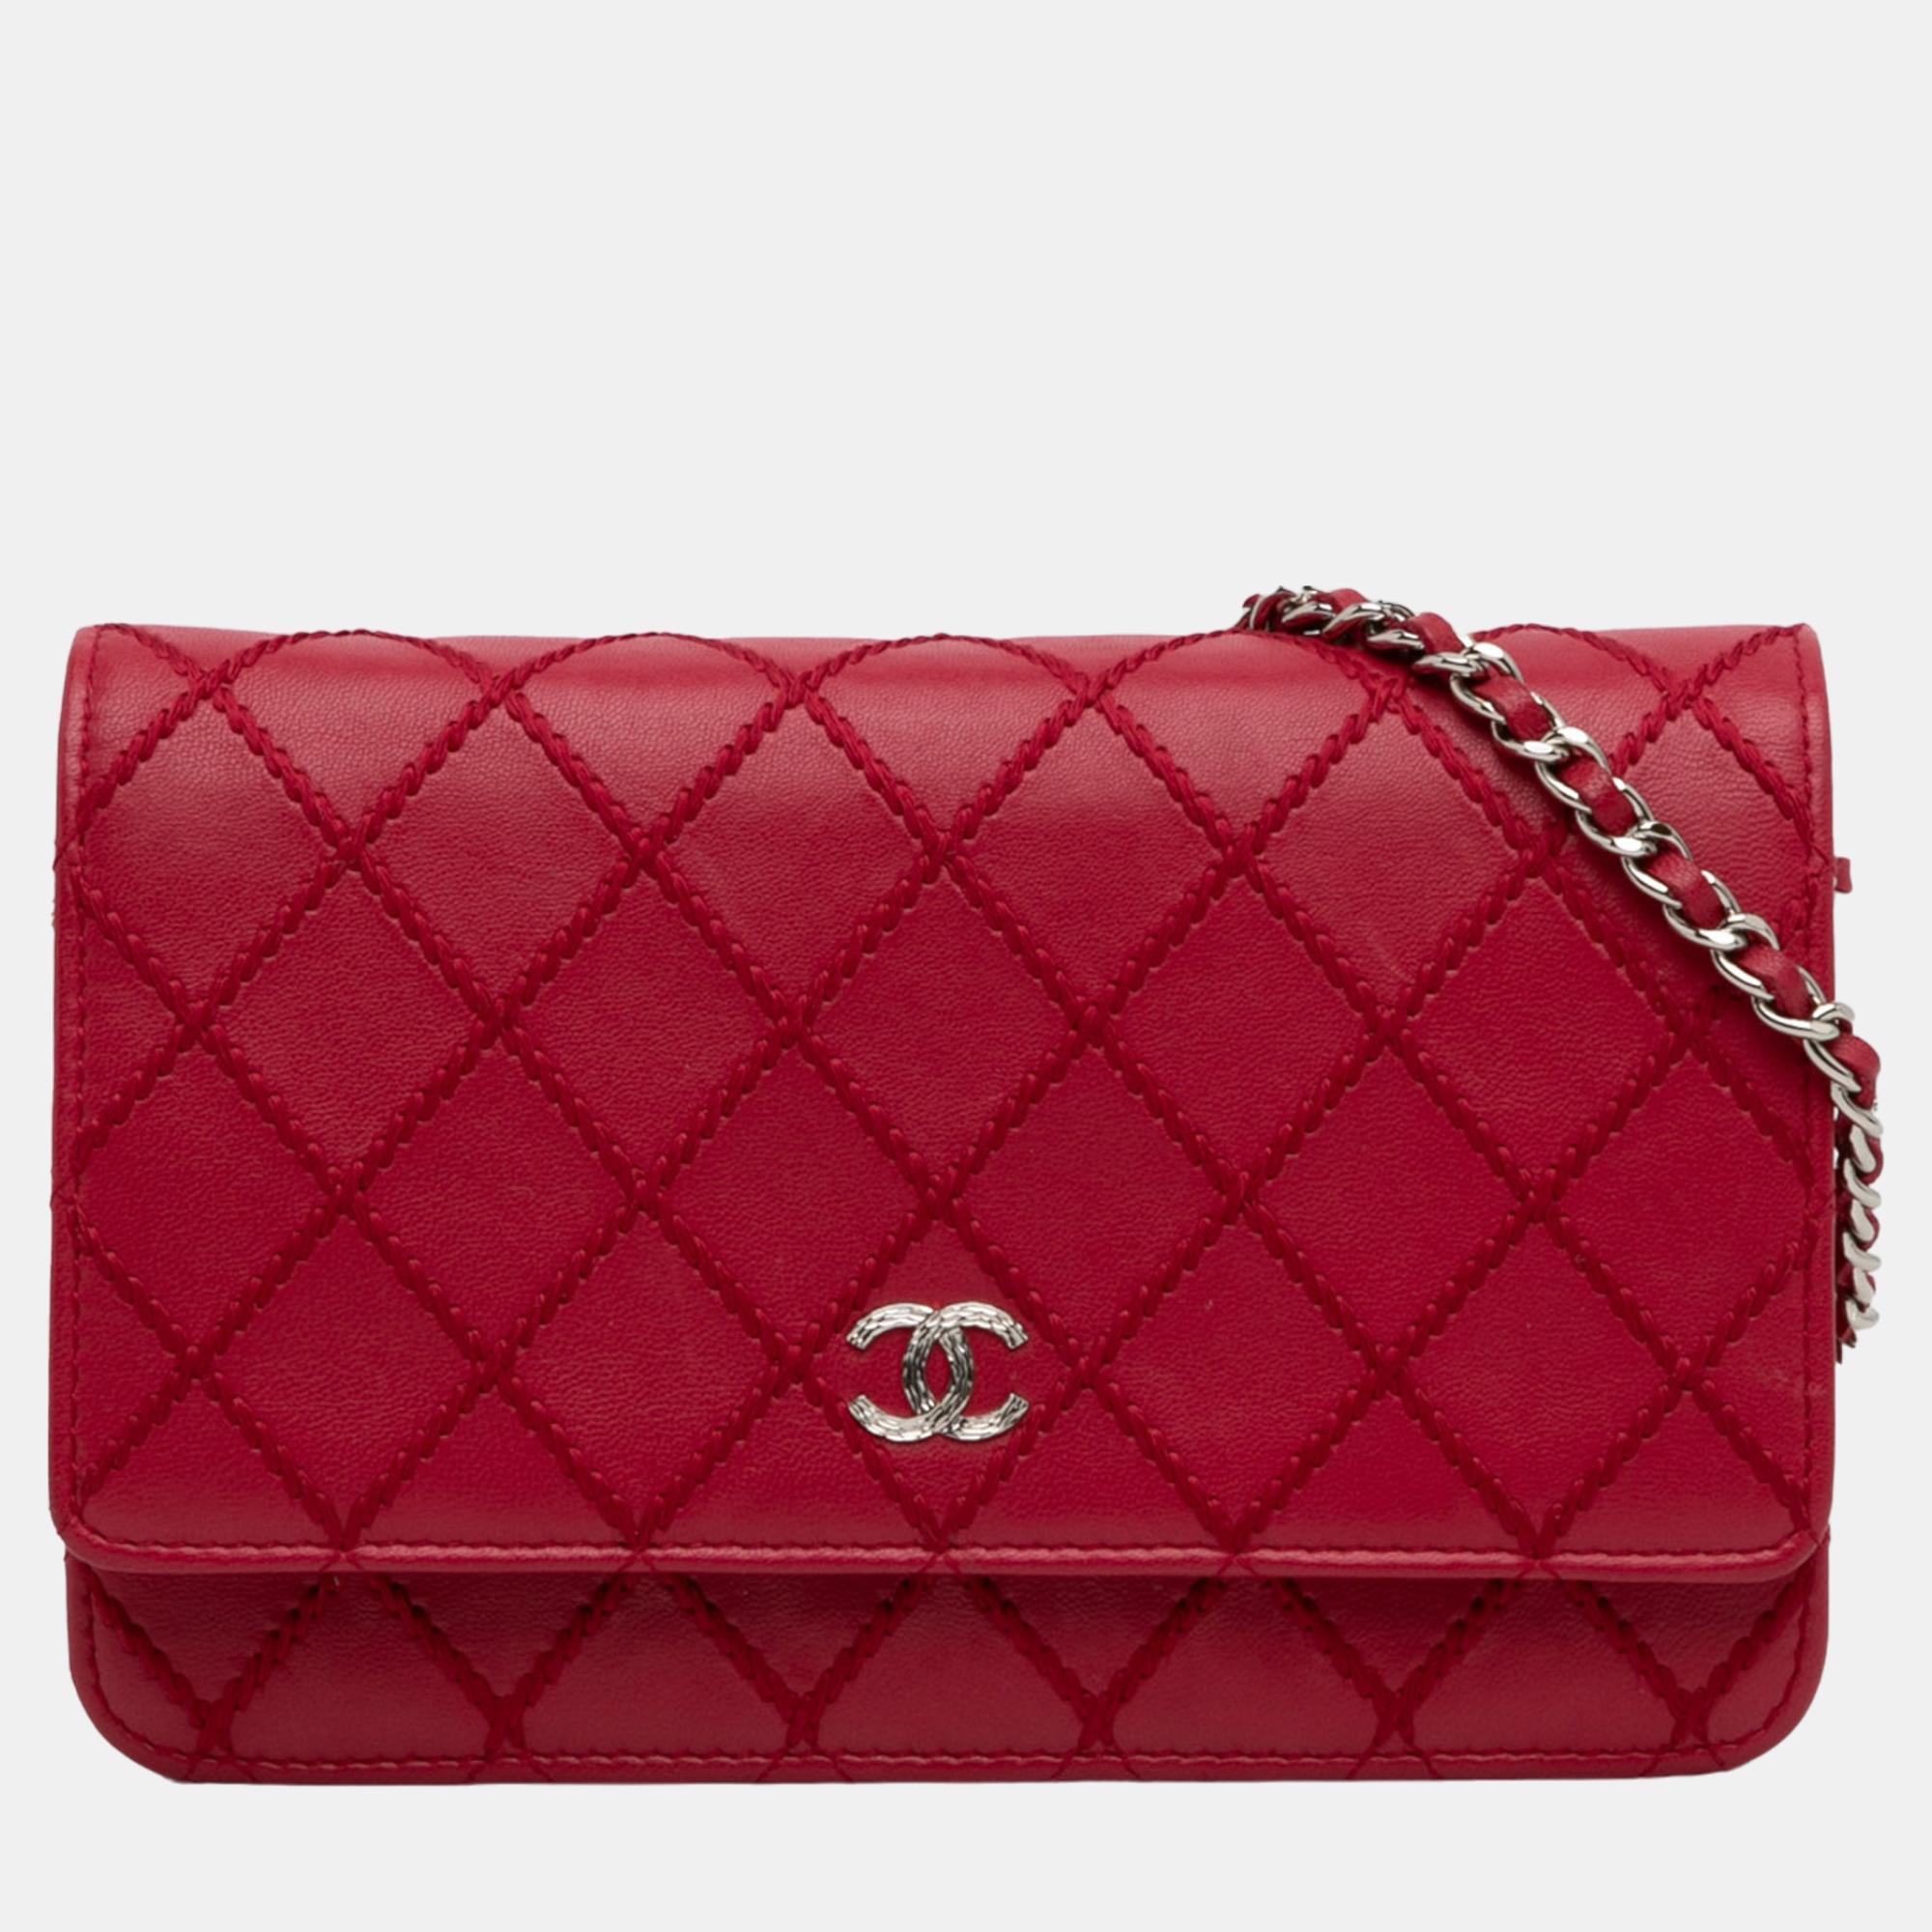 Chanel red cc wild stitch wallet on chain